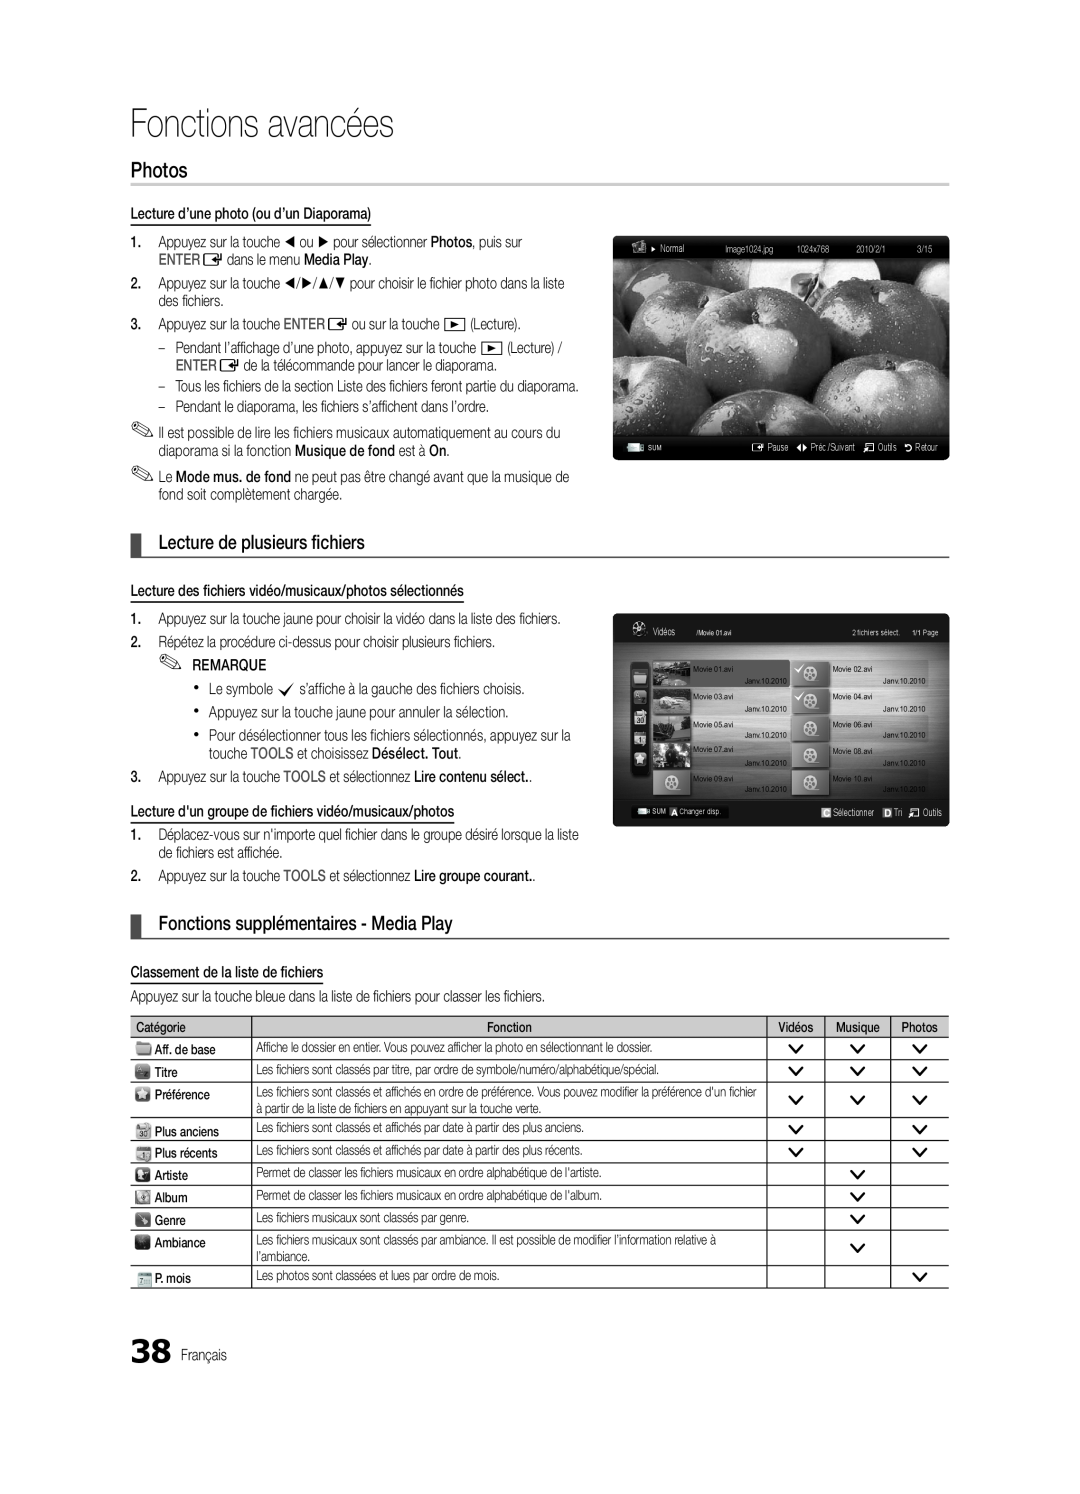 Samsung BN68-02711B-04 Lecture de plusieurs fichiers, Fonctions supplémentaires - Media Play, Fonctions avancées, Photos 